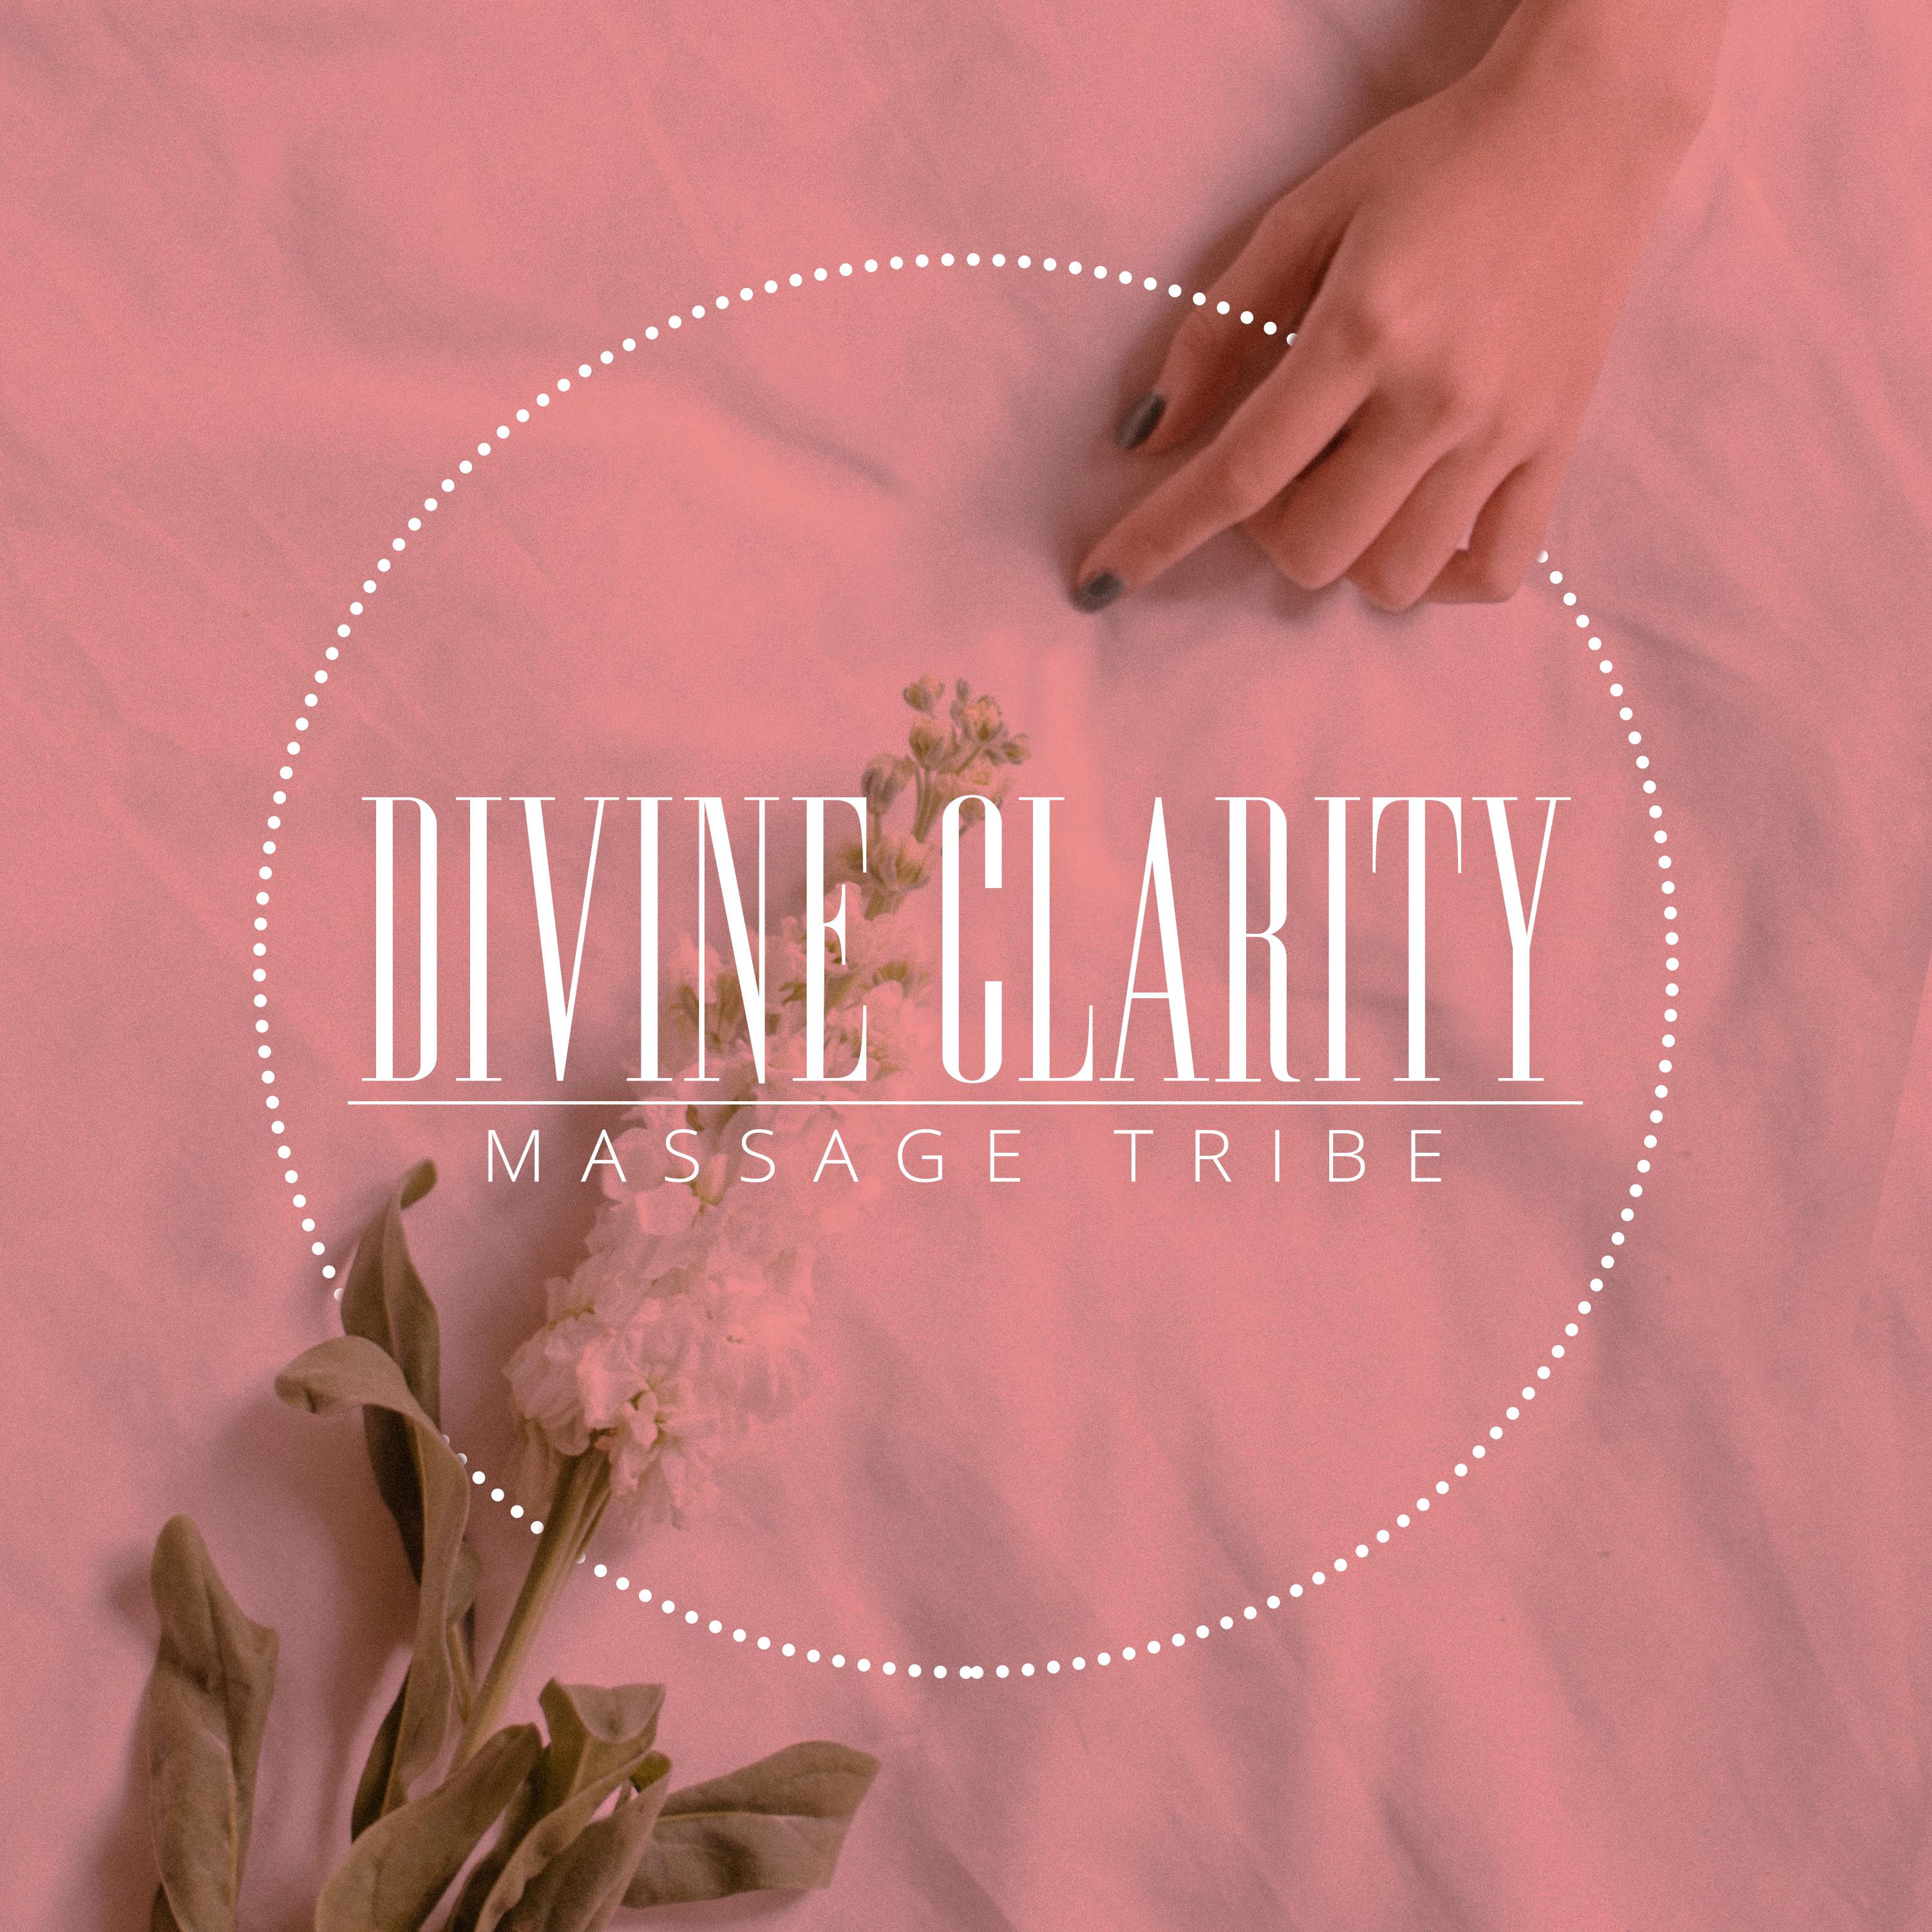 Divine Clarity